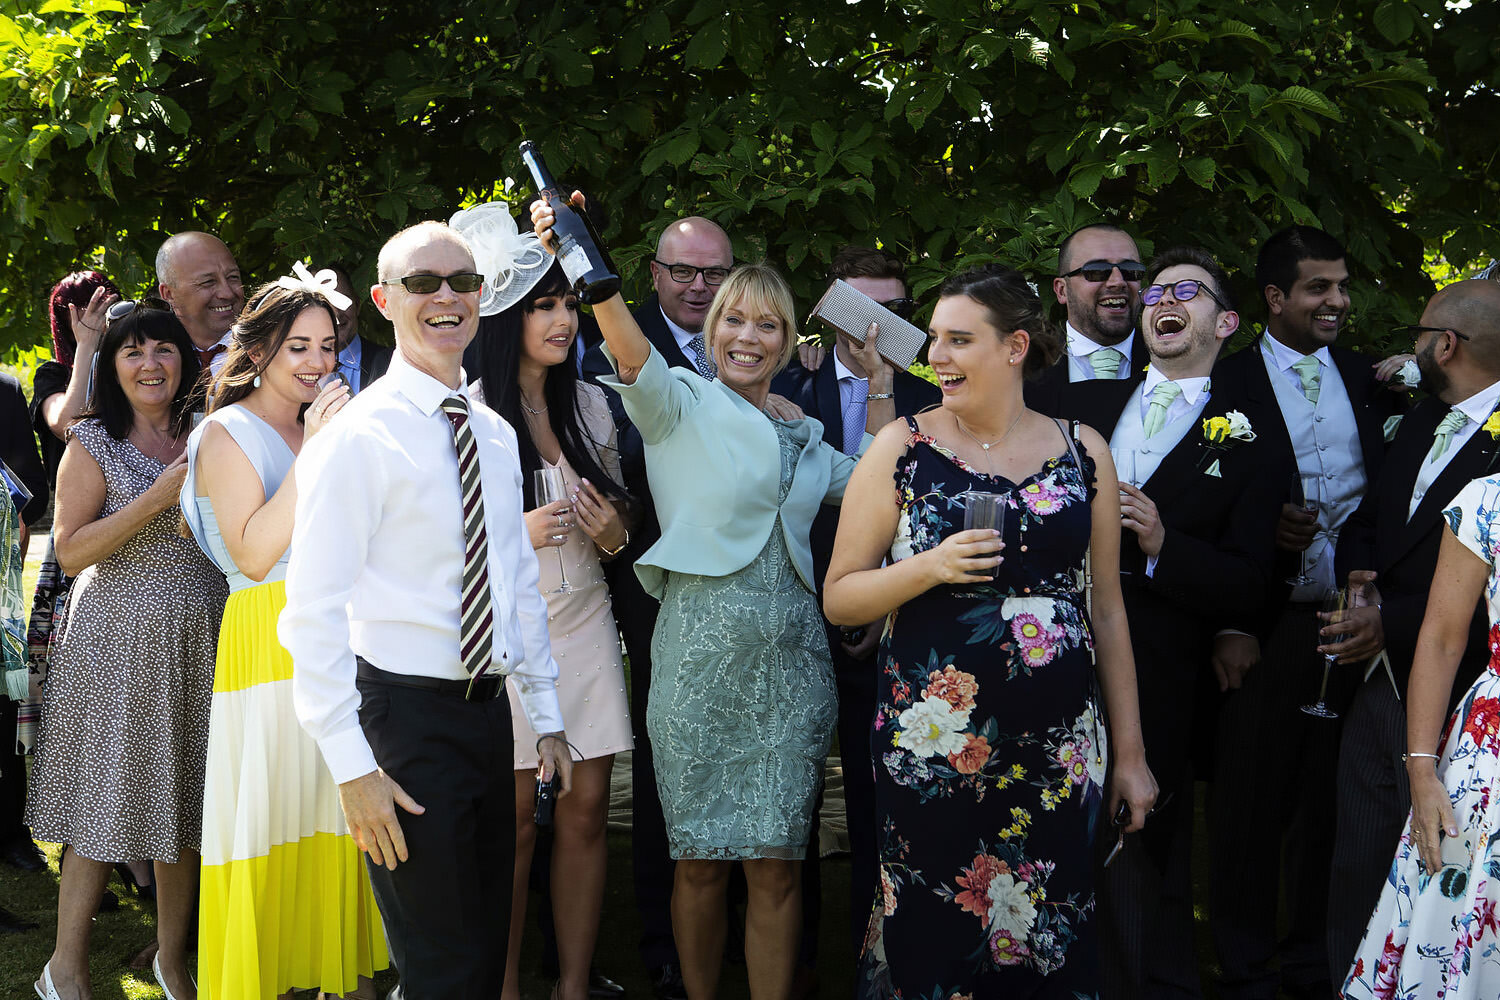 Wyboston Lakes wedding photos (30).jpg